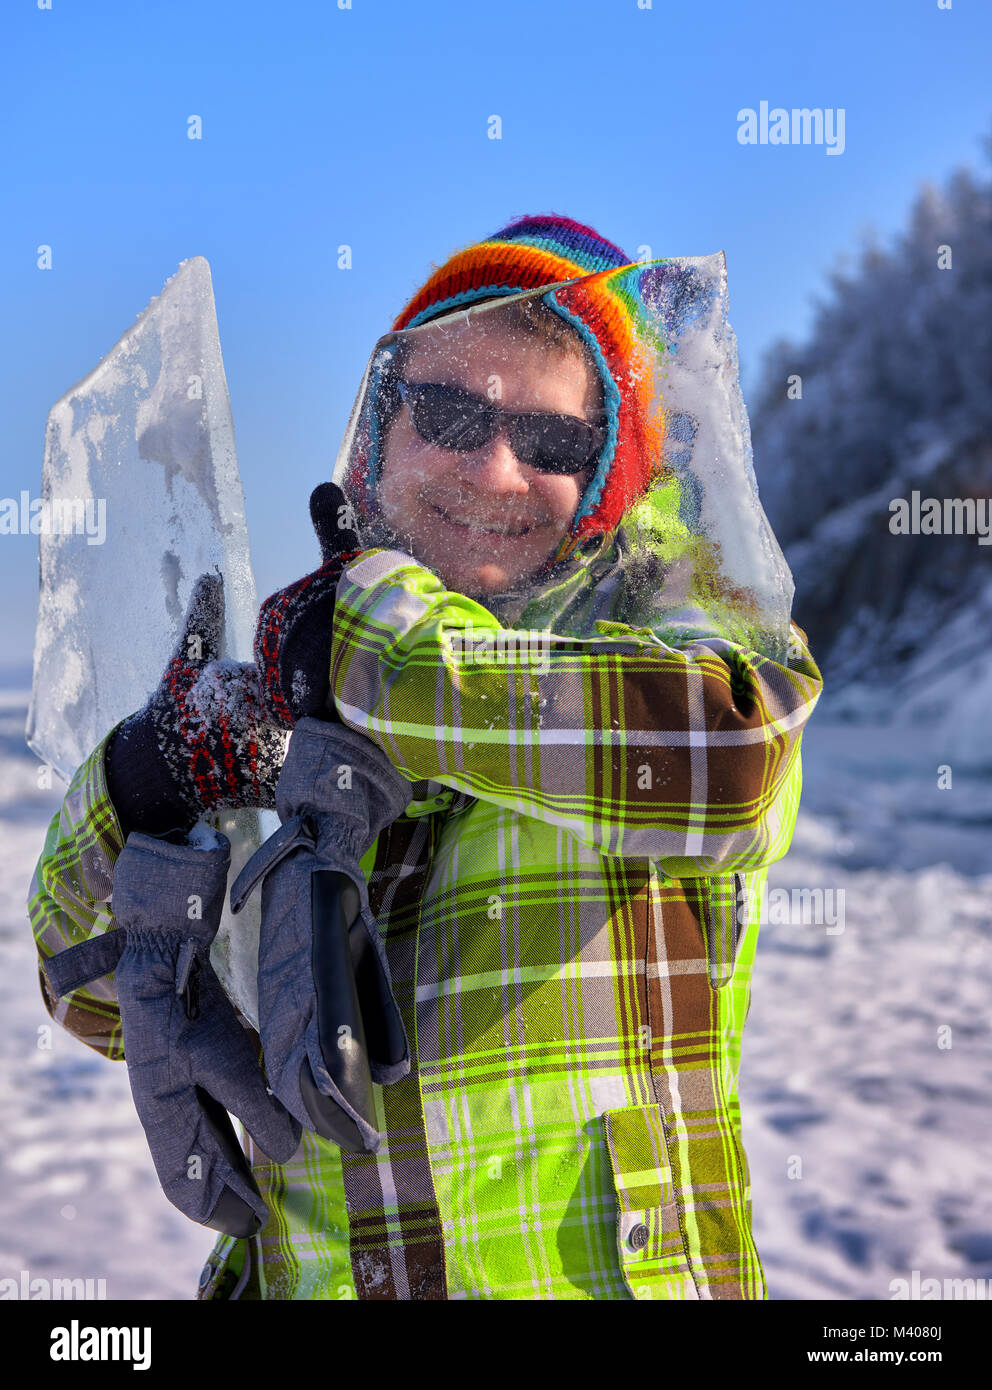 Buon compagno guarda attraverso il ghiaccio sottile di Baikal hummock tenendolo in mano. Positiva la ricreazione e divertimento invernale in Siberia Foto Stock